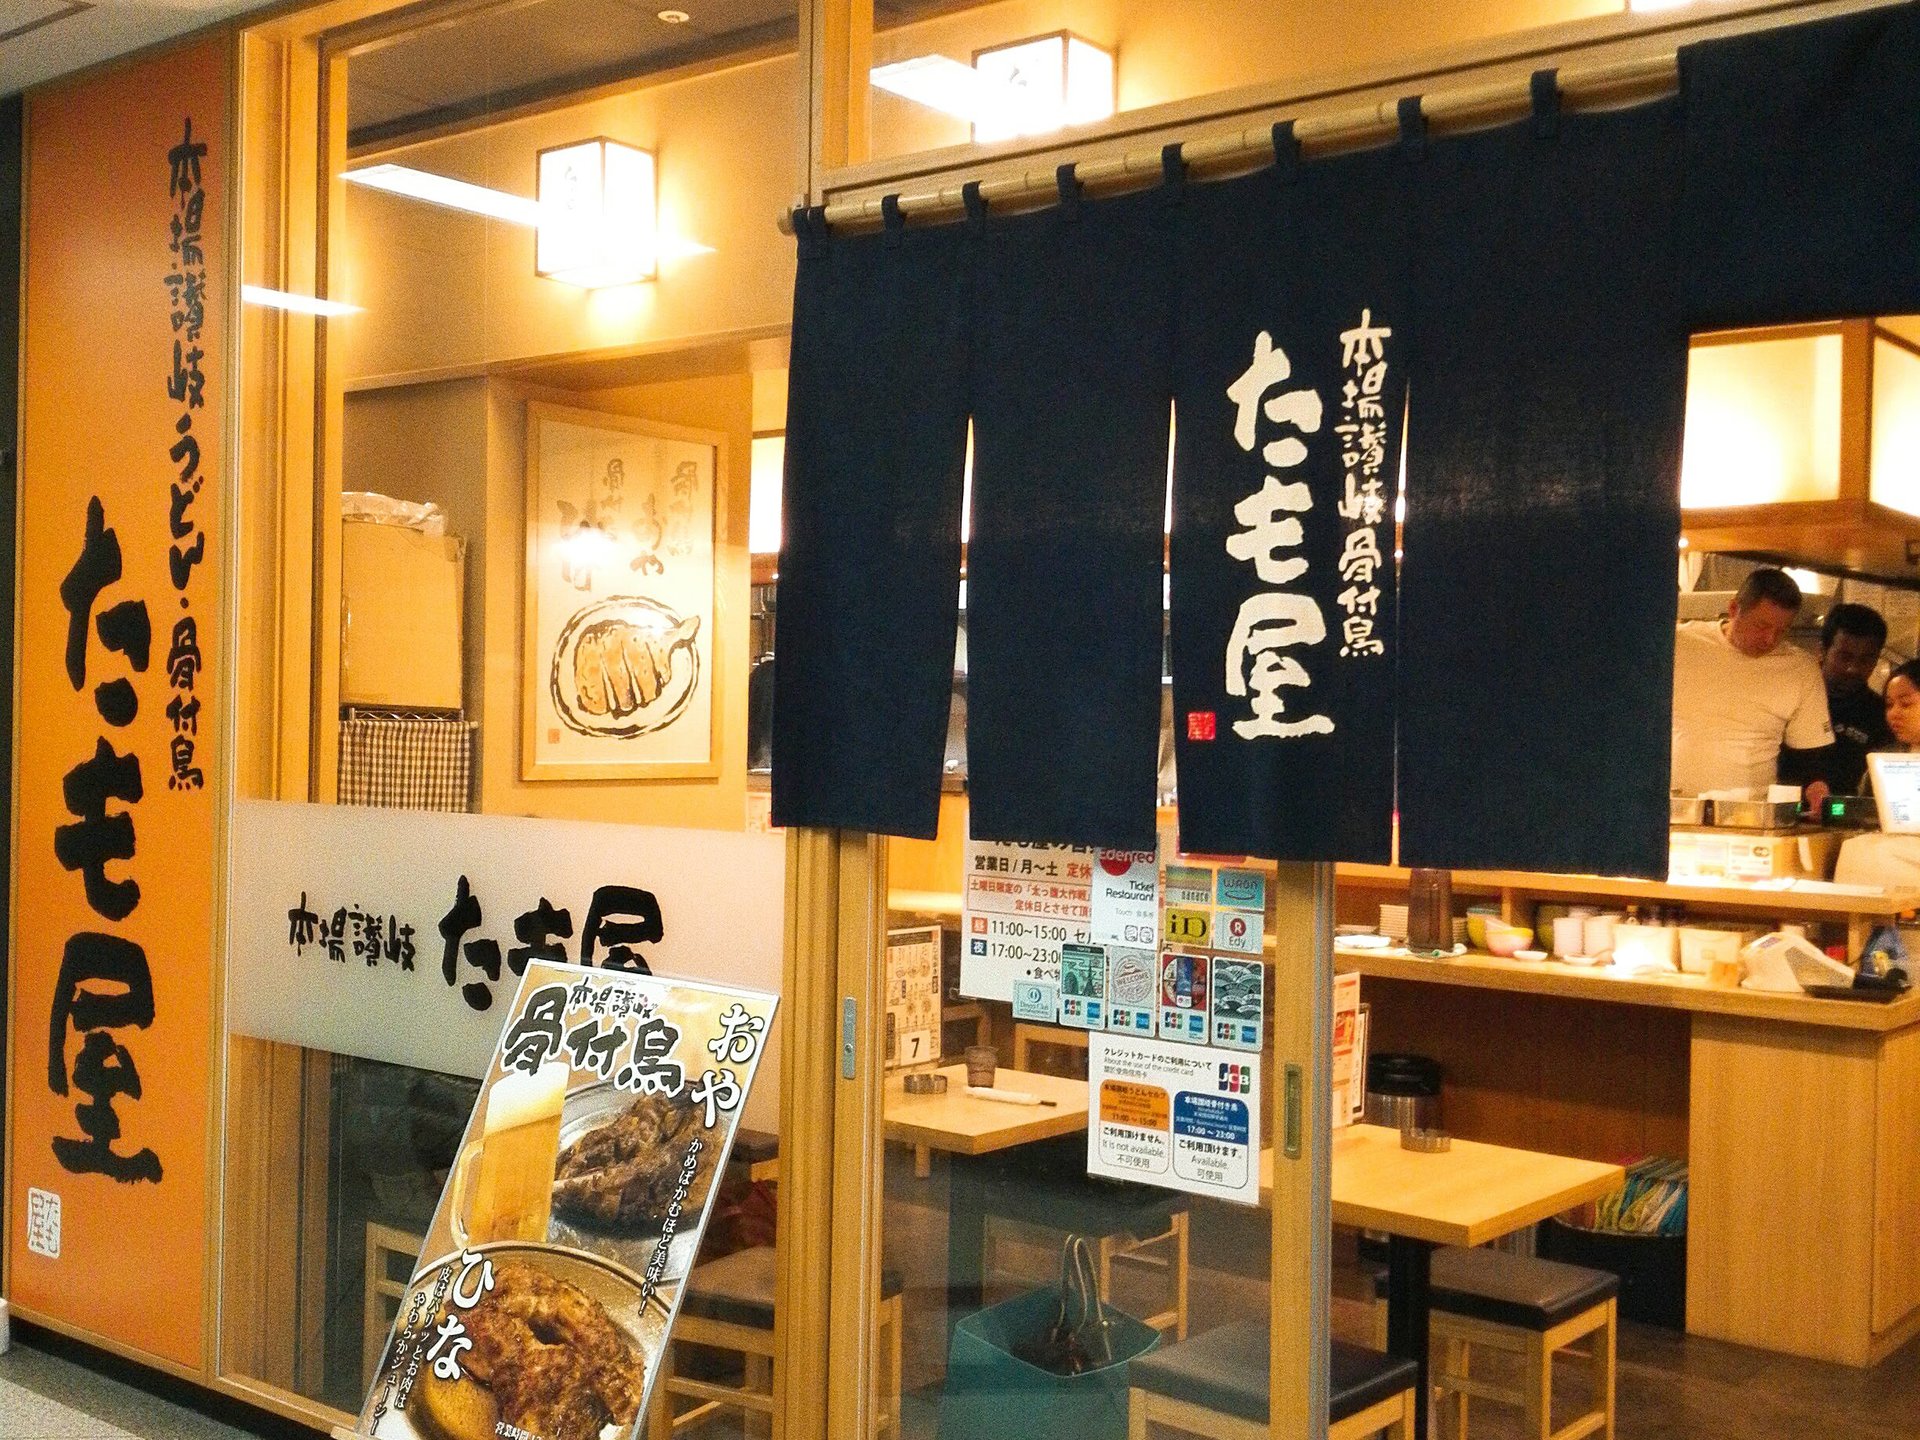 東京で食べられる本場讃岐うどんの名店「たも屋」